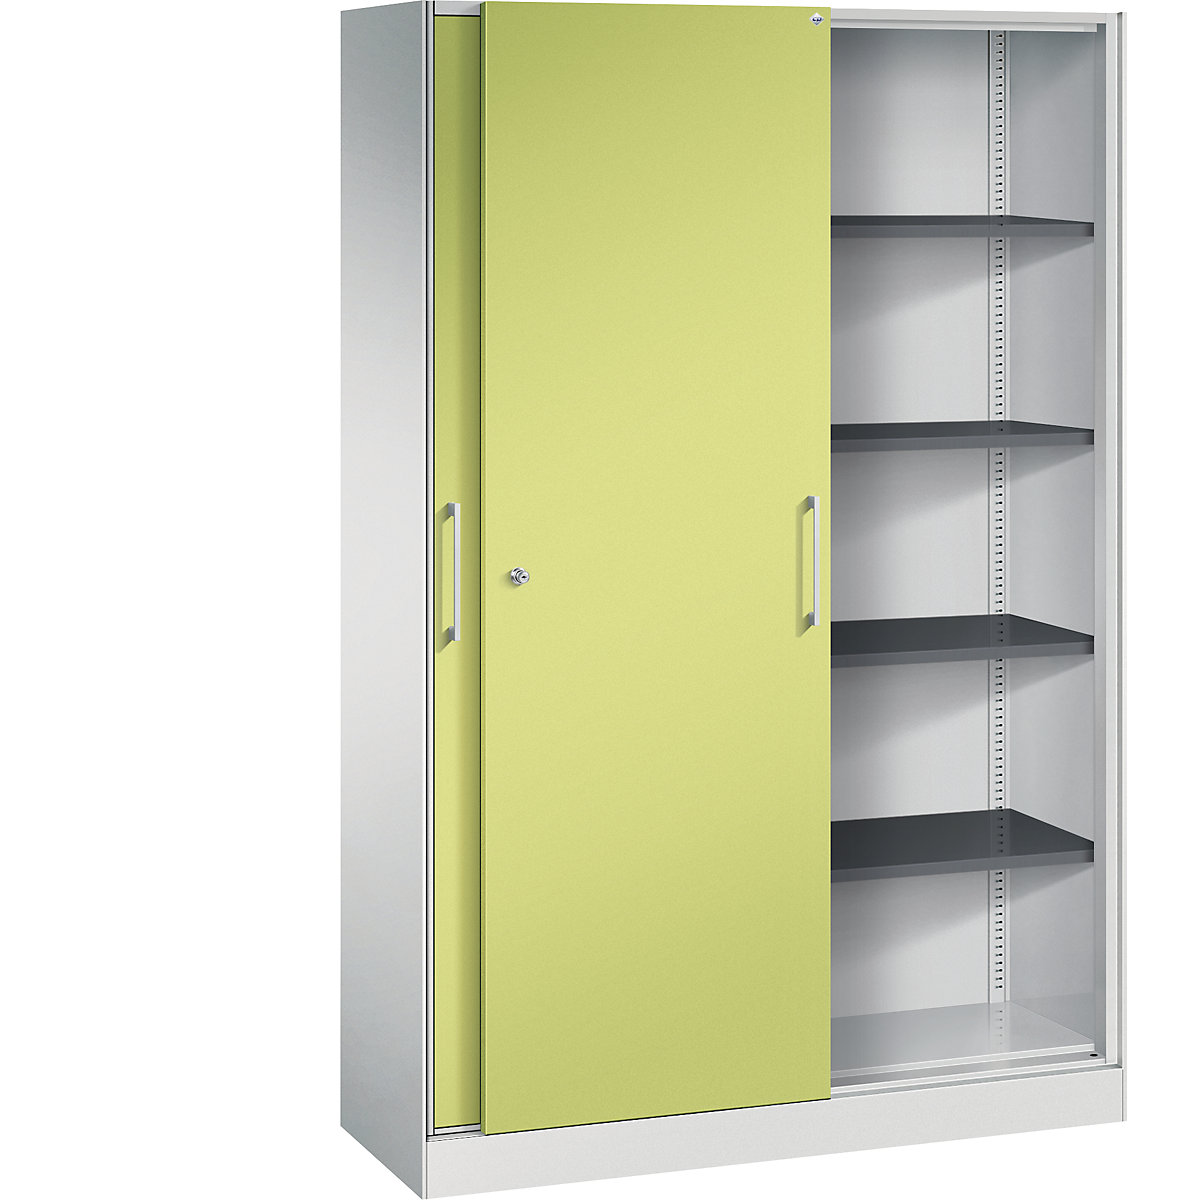 ASISTO sliding door cupboard, height 1980 mm – C+P, width 1200 mm, light grey/viridian green-15